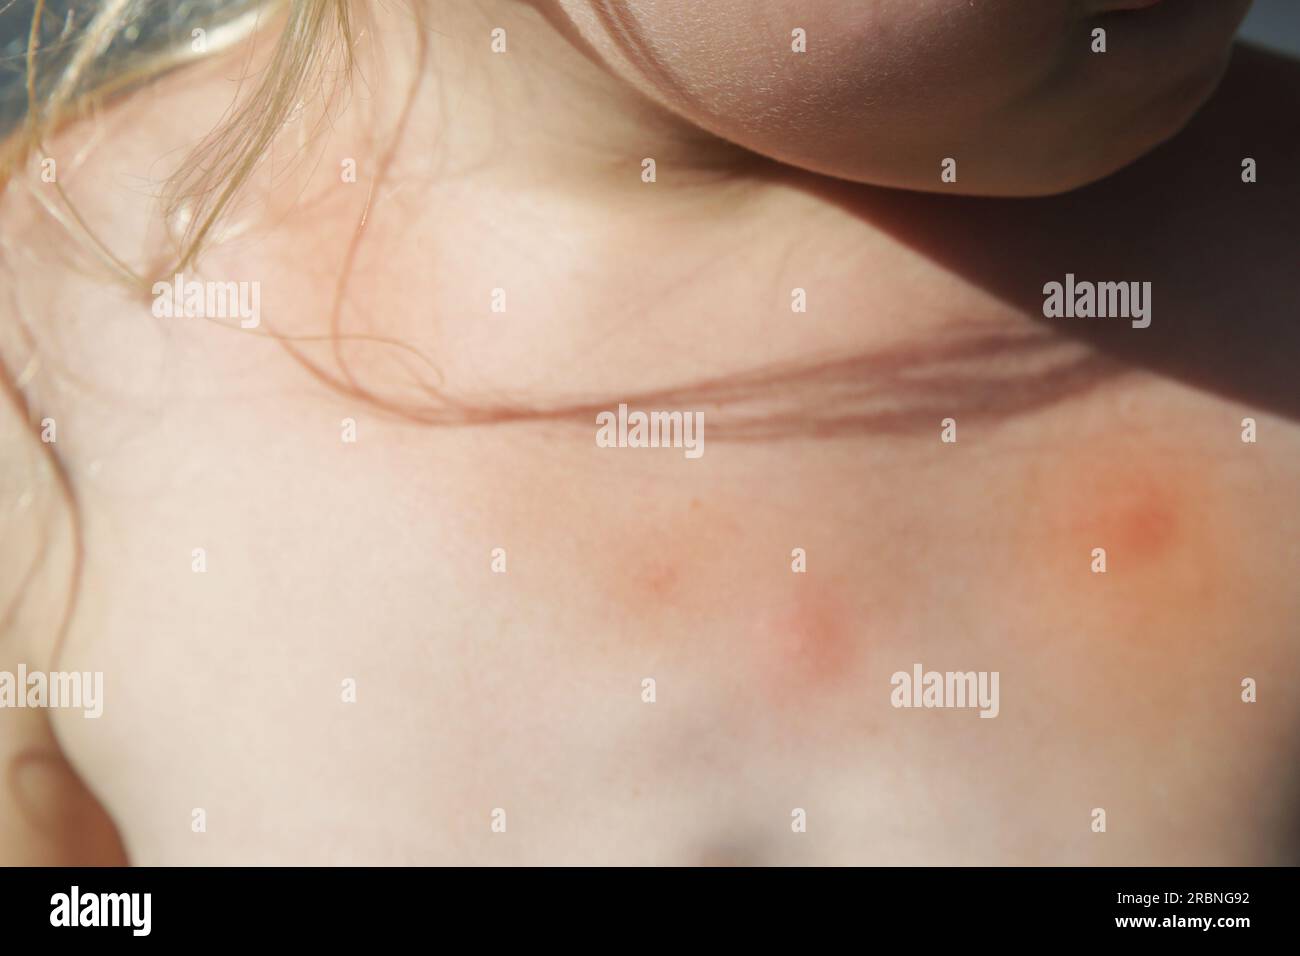 La petite fille a une éruption cutanée due à une allergie ou à des piqûres de moustiques Banque D'Images